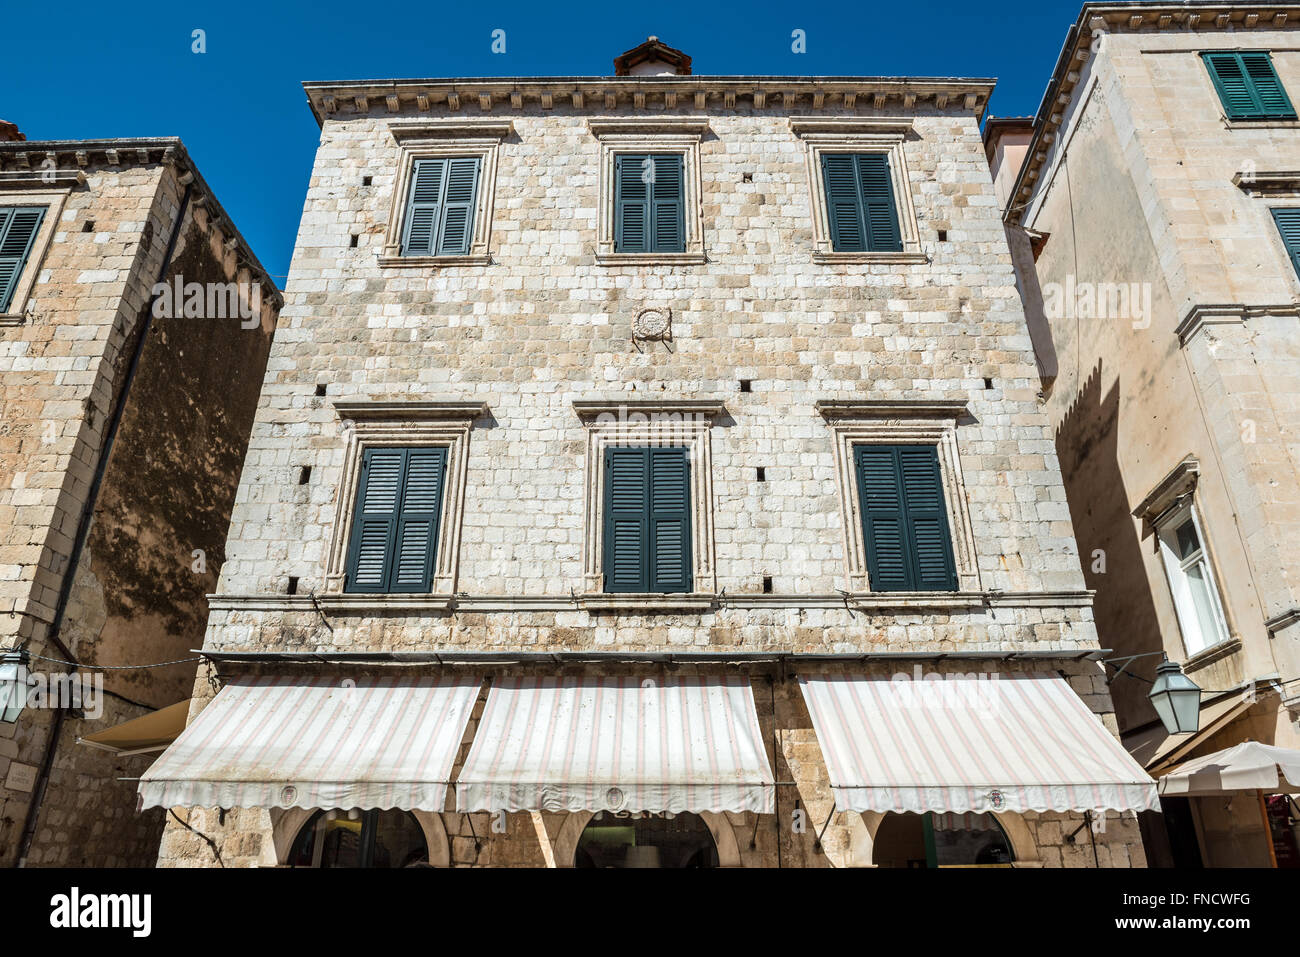 S'appuyant sur (ou Stradun Placa) - rue piétonne pavée de calcaire dans la vieille ville de Dubrovnik, Croatie Banque D'Images